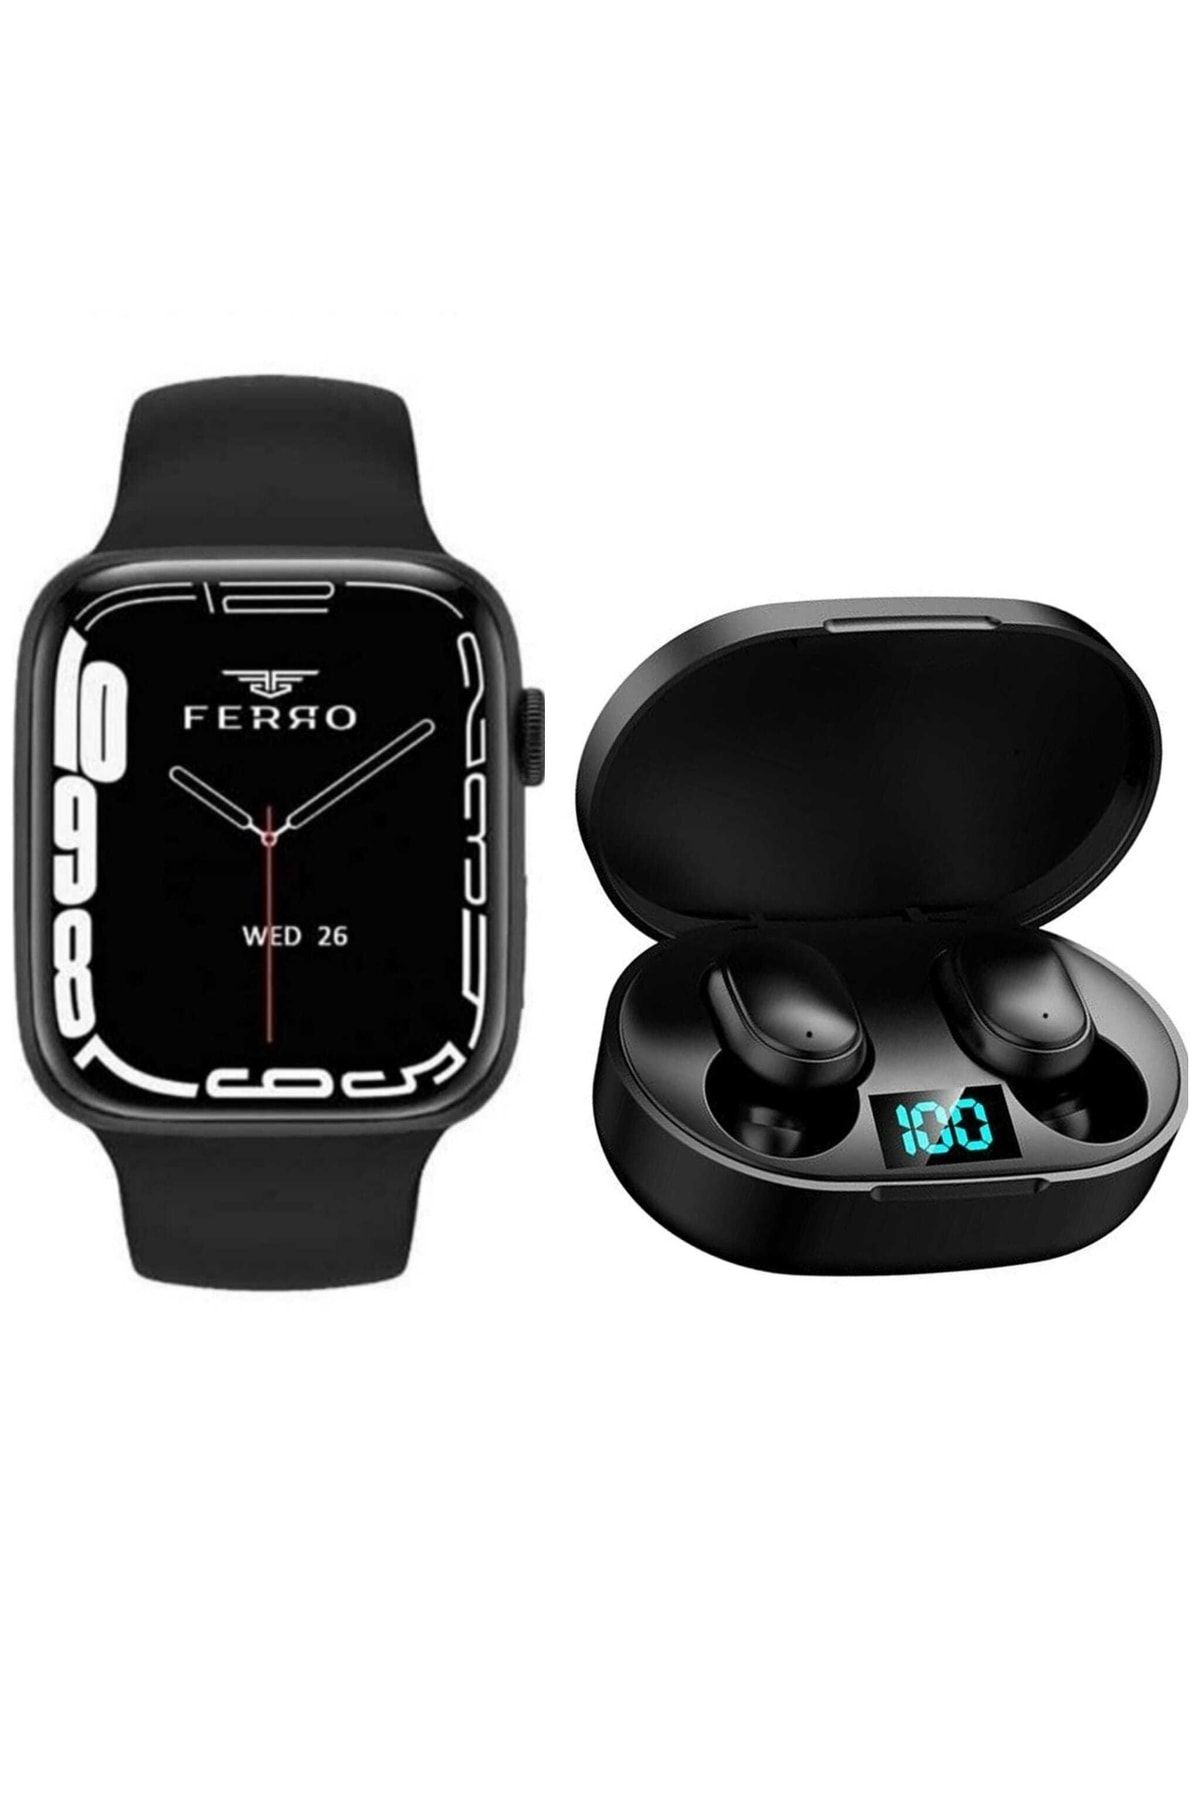 FERRO Watch Gps Nfc Konuşma Özelikli Bluetooth Kulaklık Hediyeli Android Ve Ios Uyumlu Akıllı Saat